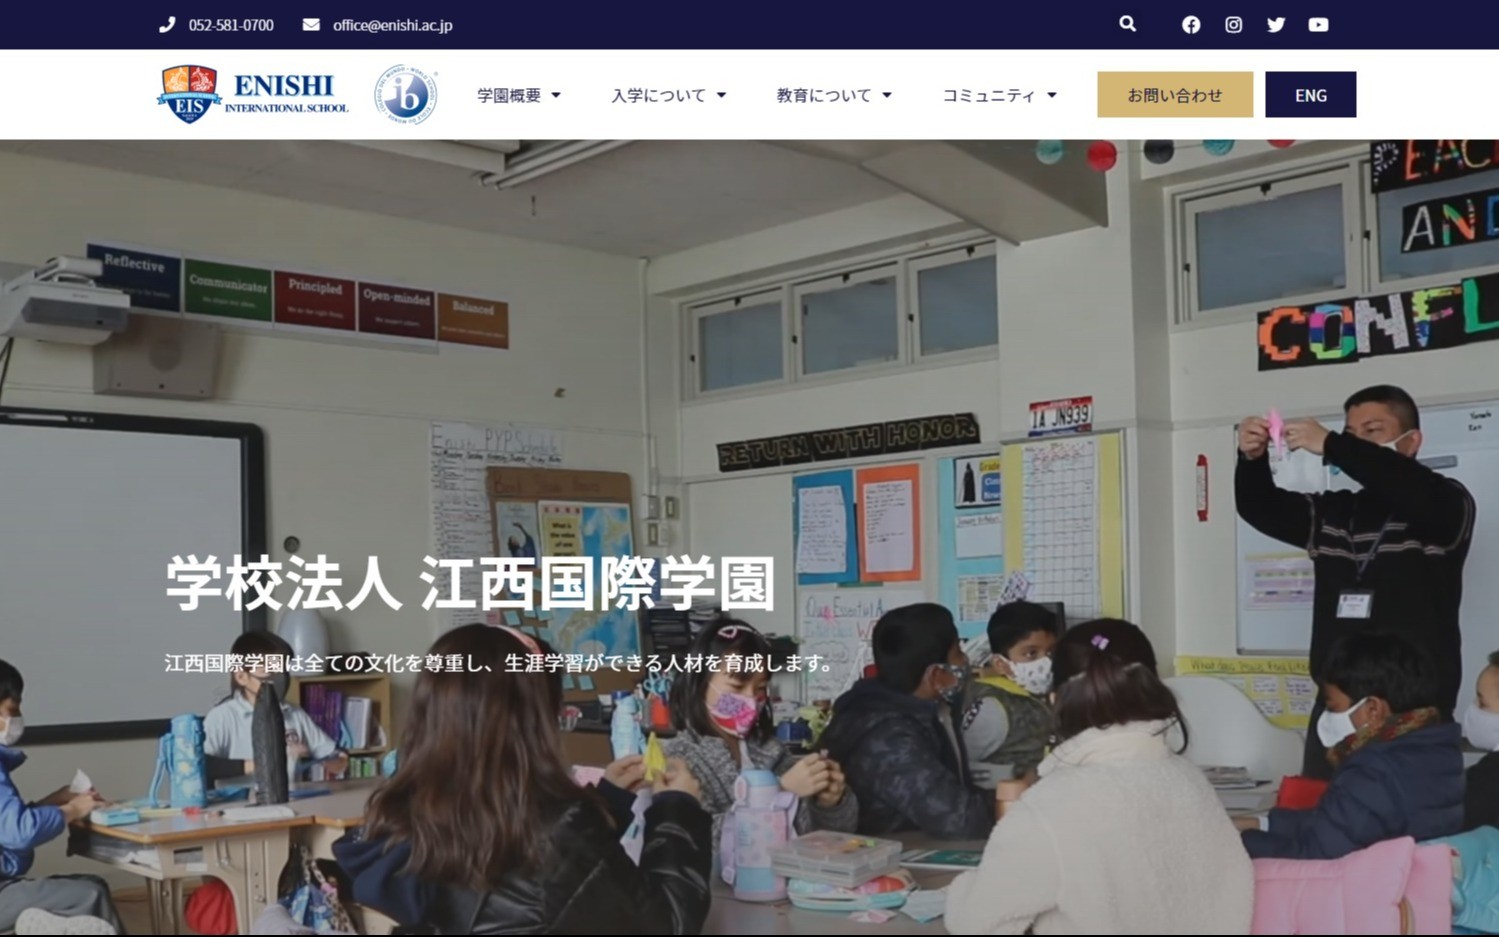 学校法人江西国際学園　コーポレートサイト | Web制作・ホームページ制作実績 | Web幹事